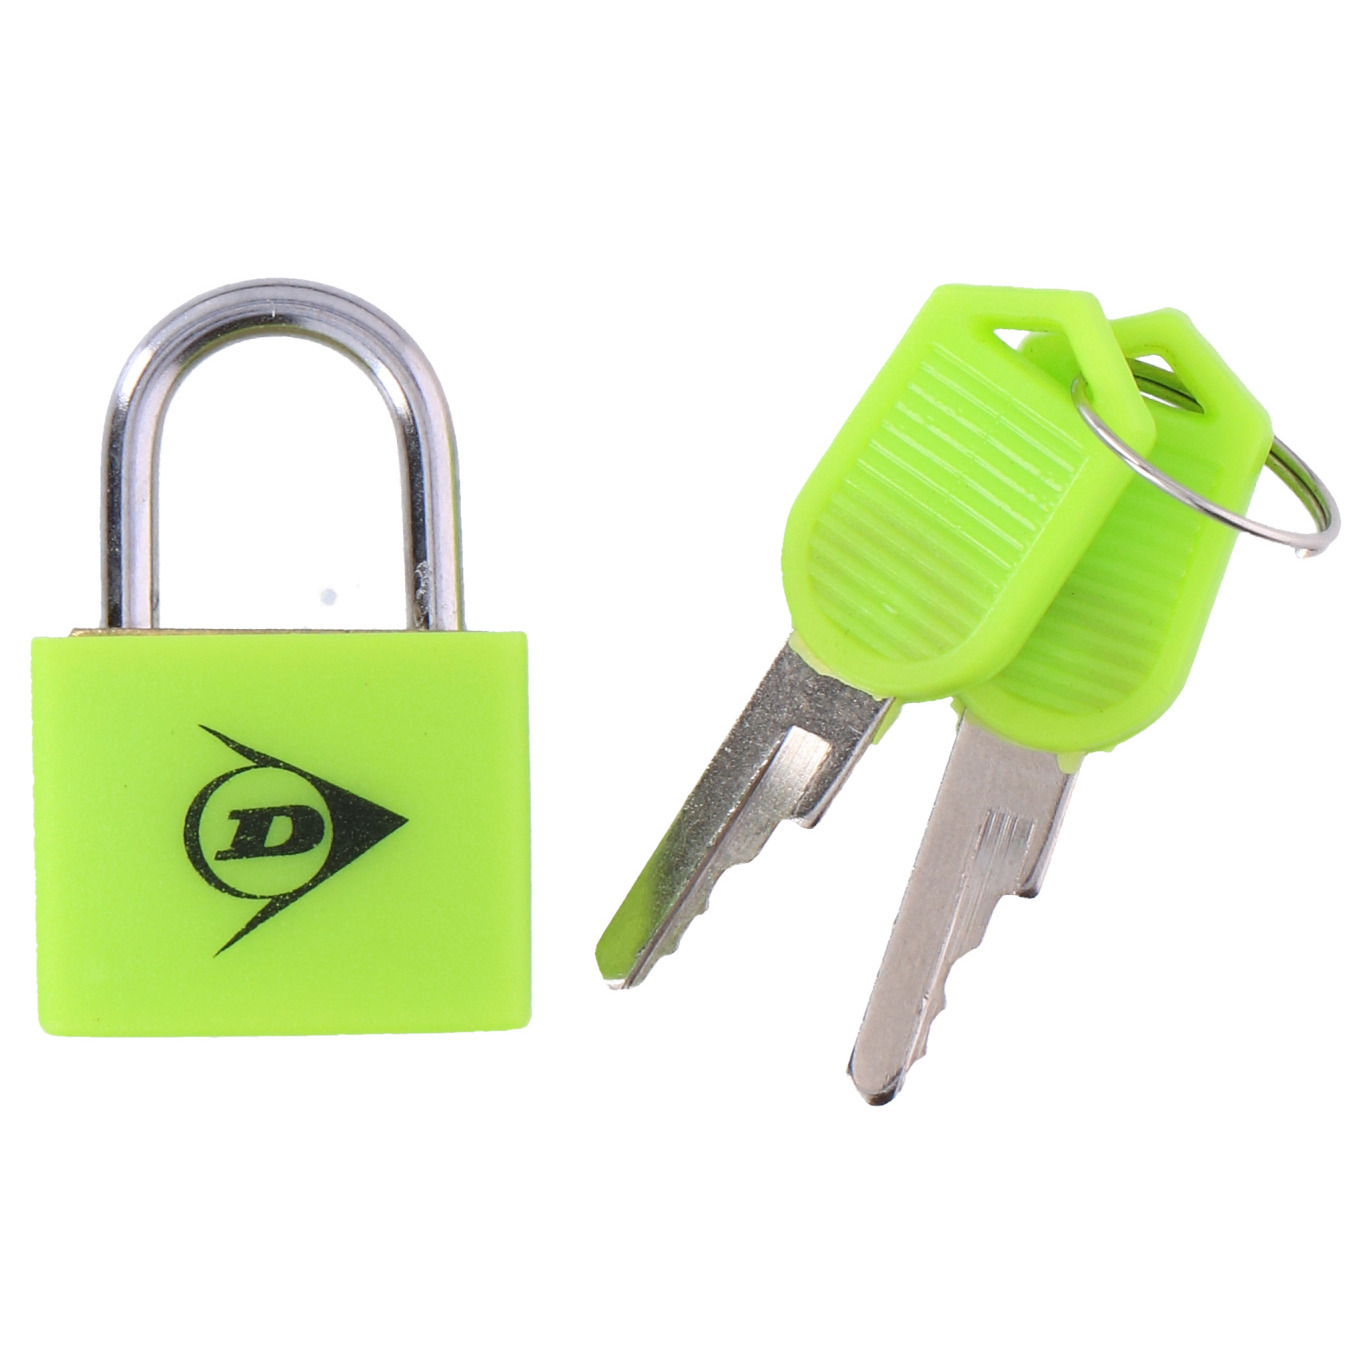 Dunlop Bagagesloten voor reistassen en koffers 2x stuks groen hangslotjes met sleutel